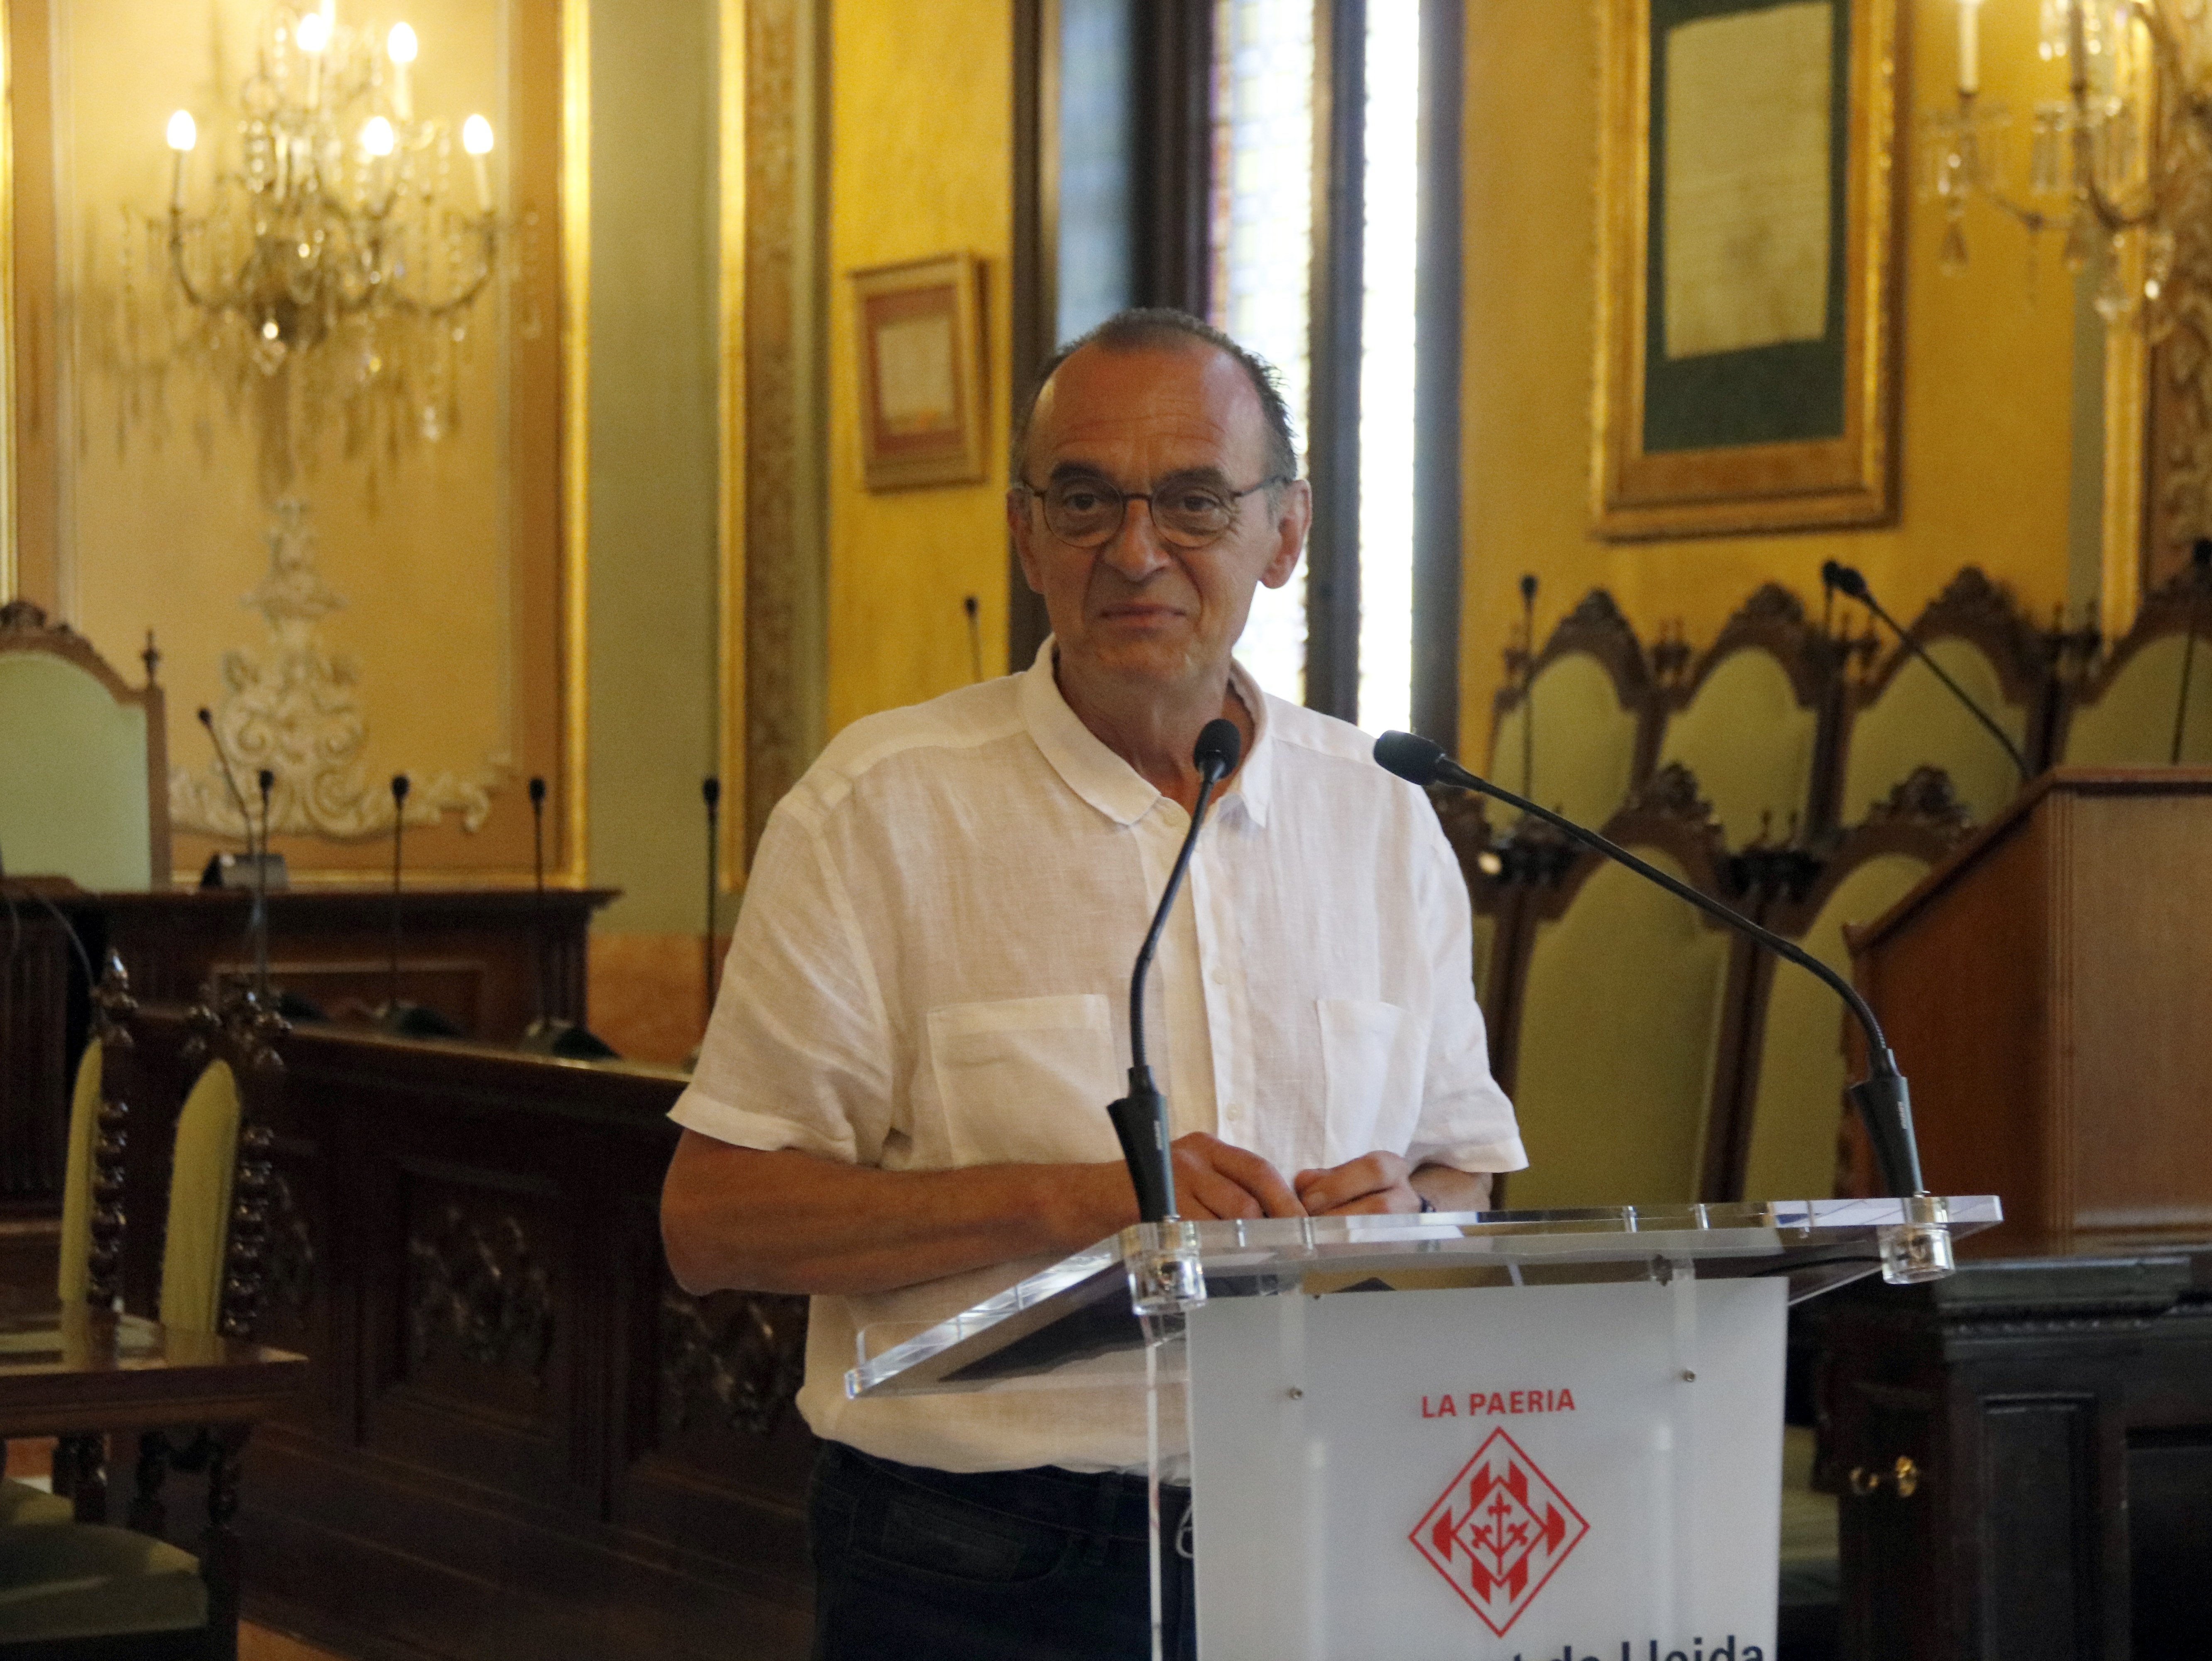 Pueyo y el confinamiento: "Necesitamos el afecto y apoyo del resto de catalanes"